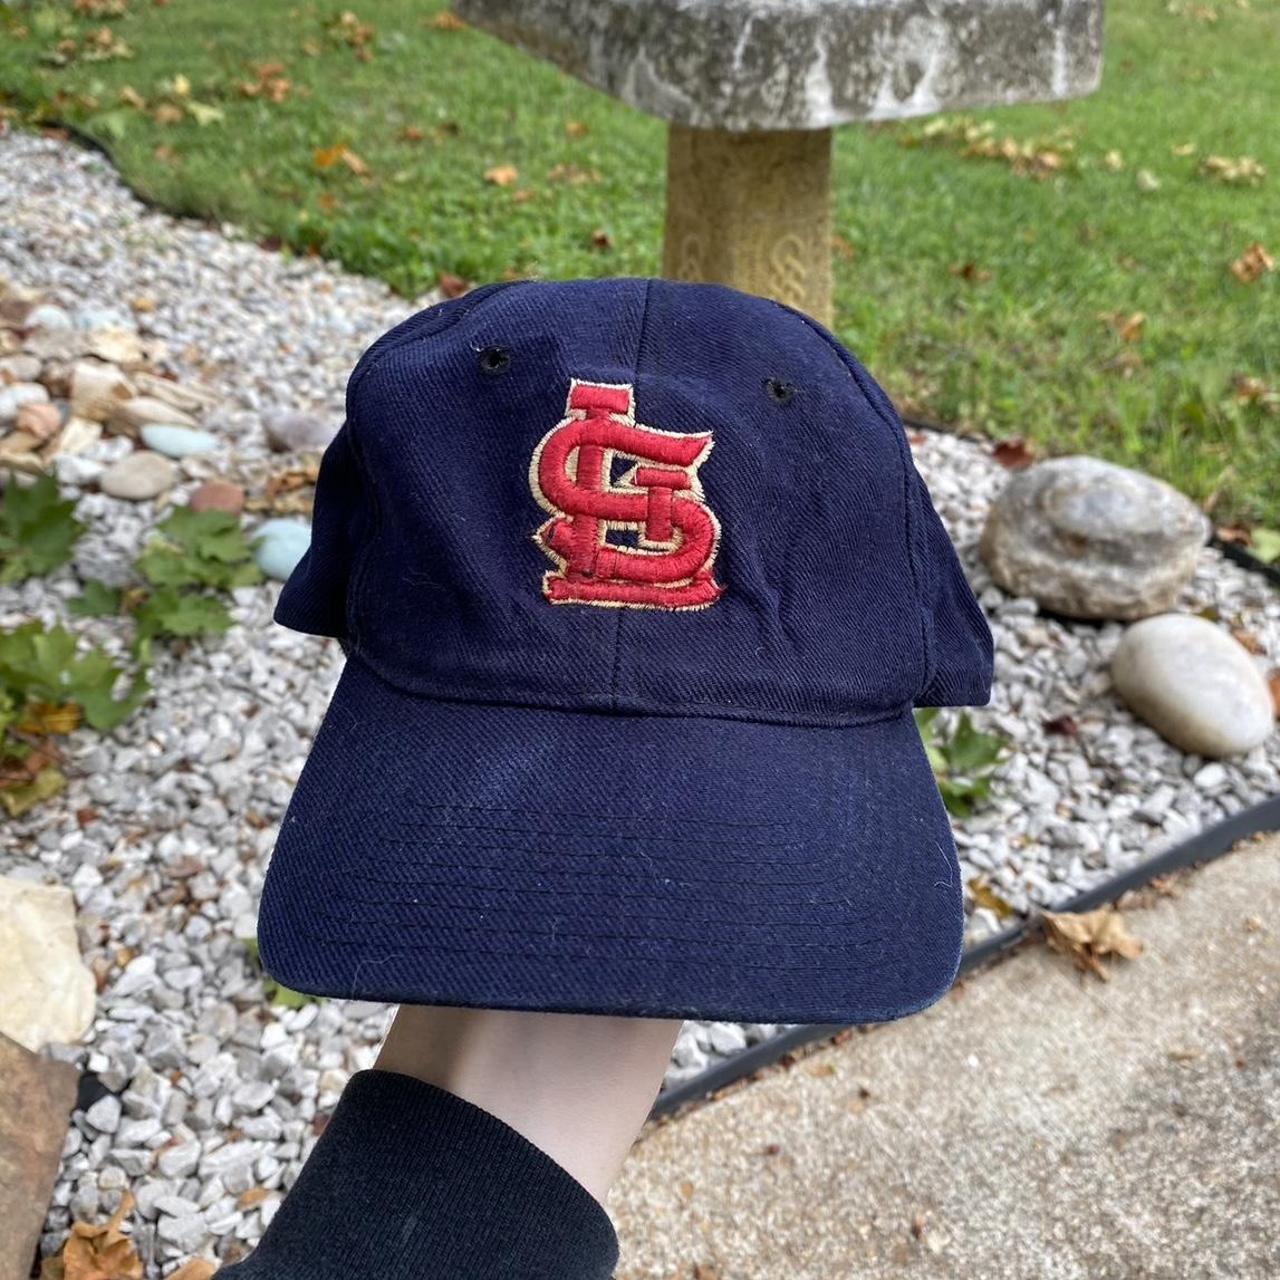 vintage Saint Louis cardinals fitted hat, -size 7